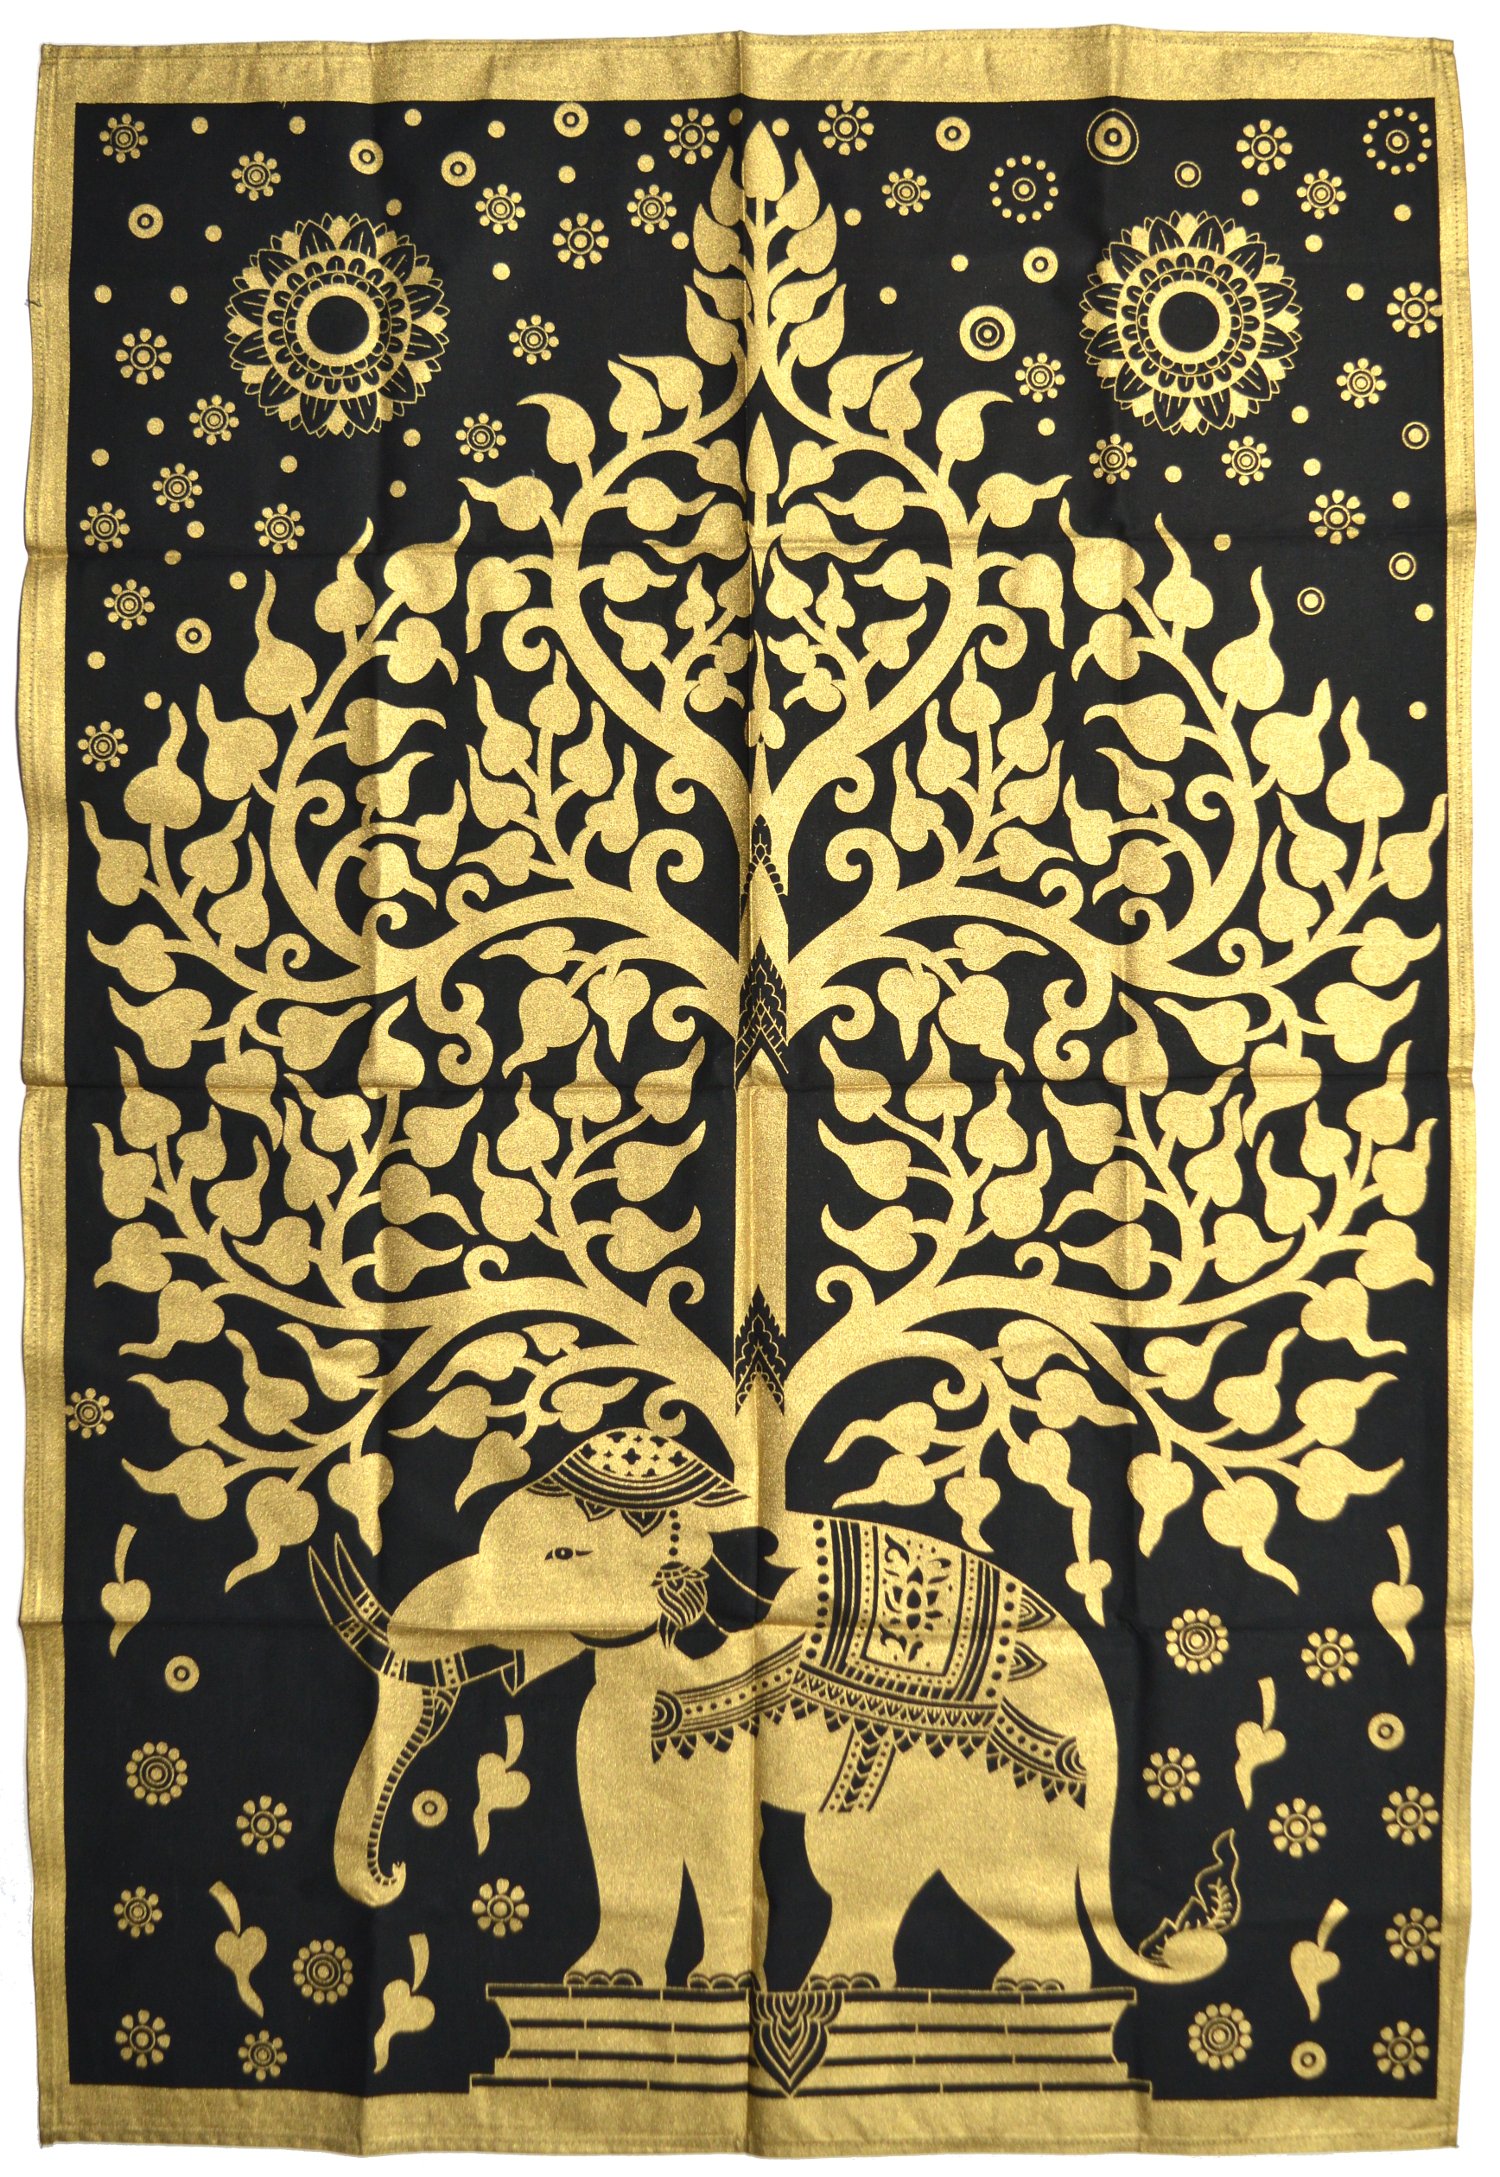 Панно "Дерево и слон" (черно-золотое, 72 х 110 см). 